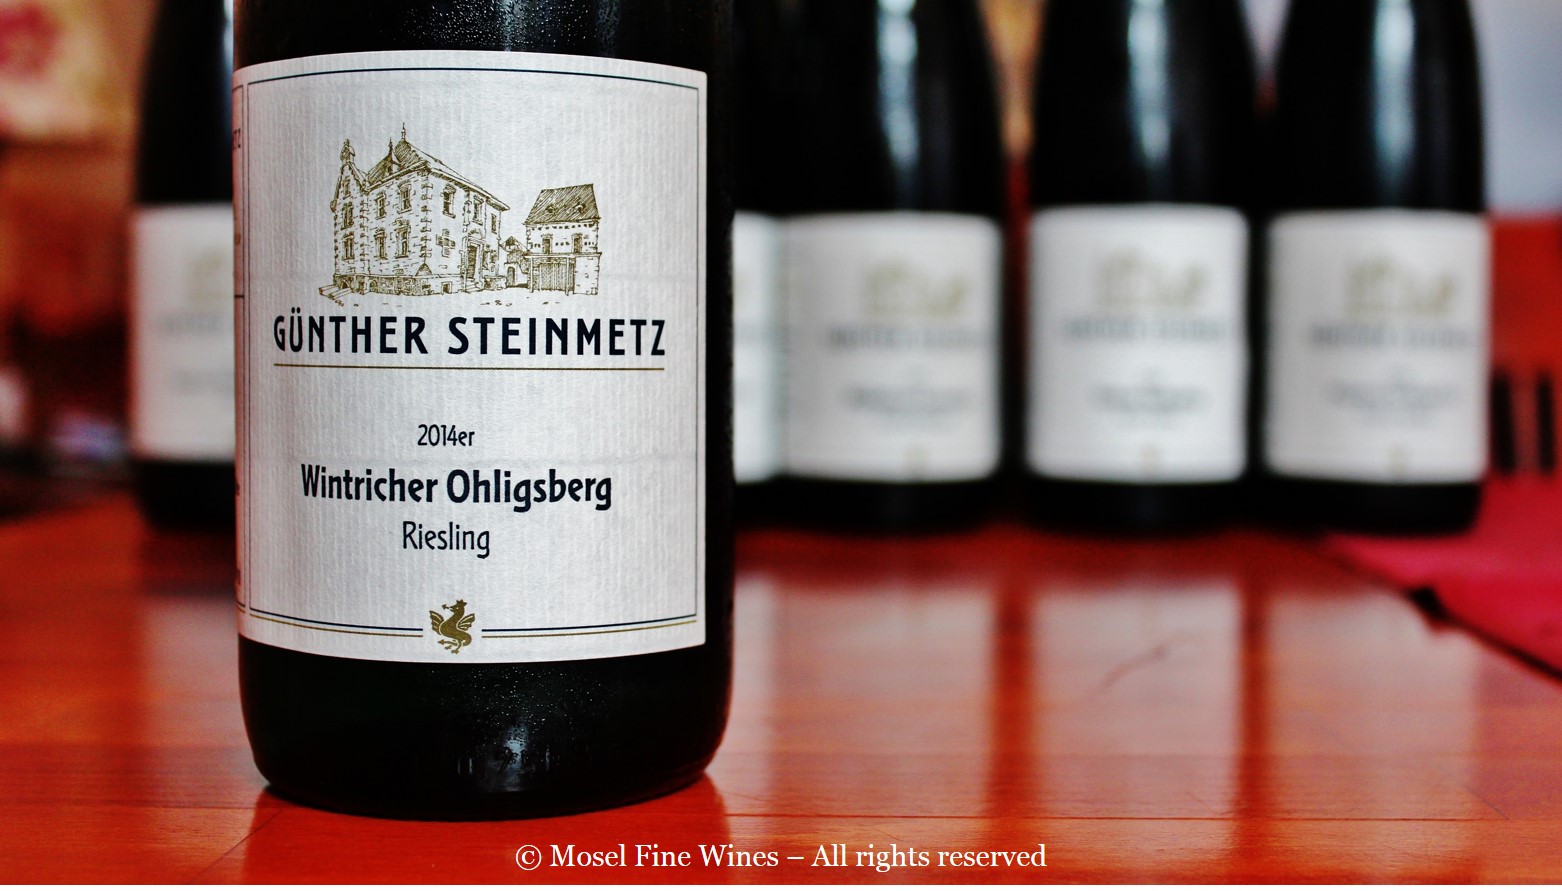 Günther Steinmetz Wintricher Ohligsberg Riesling 2014 Label